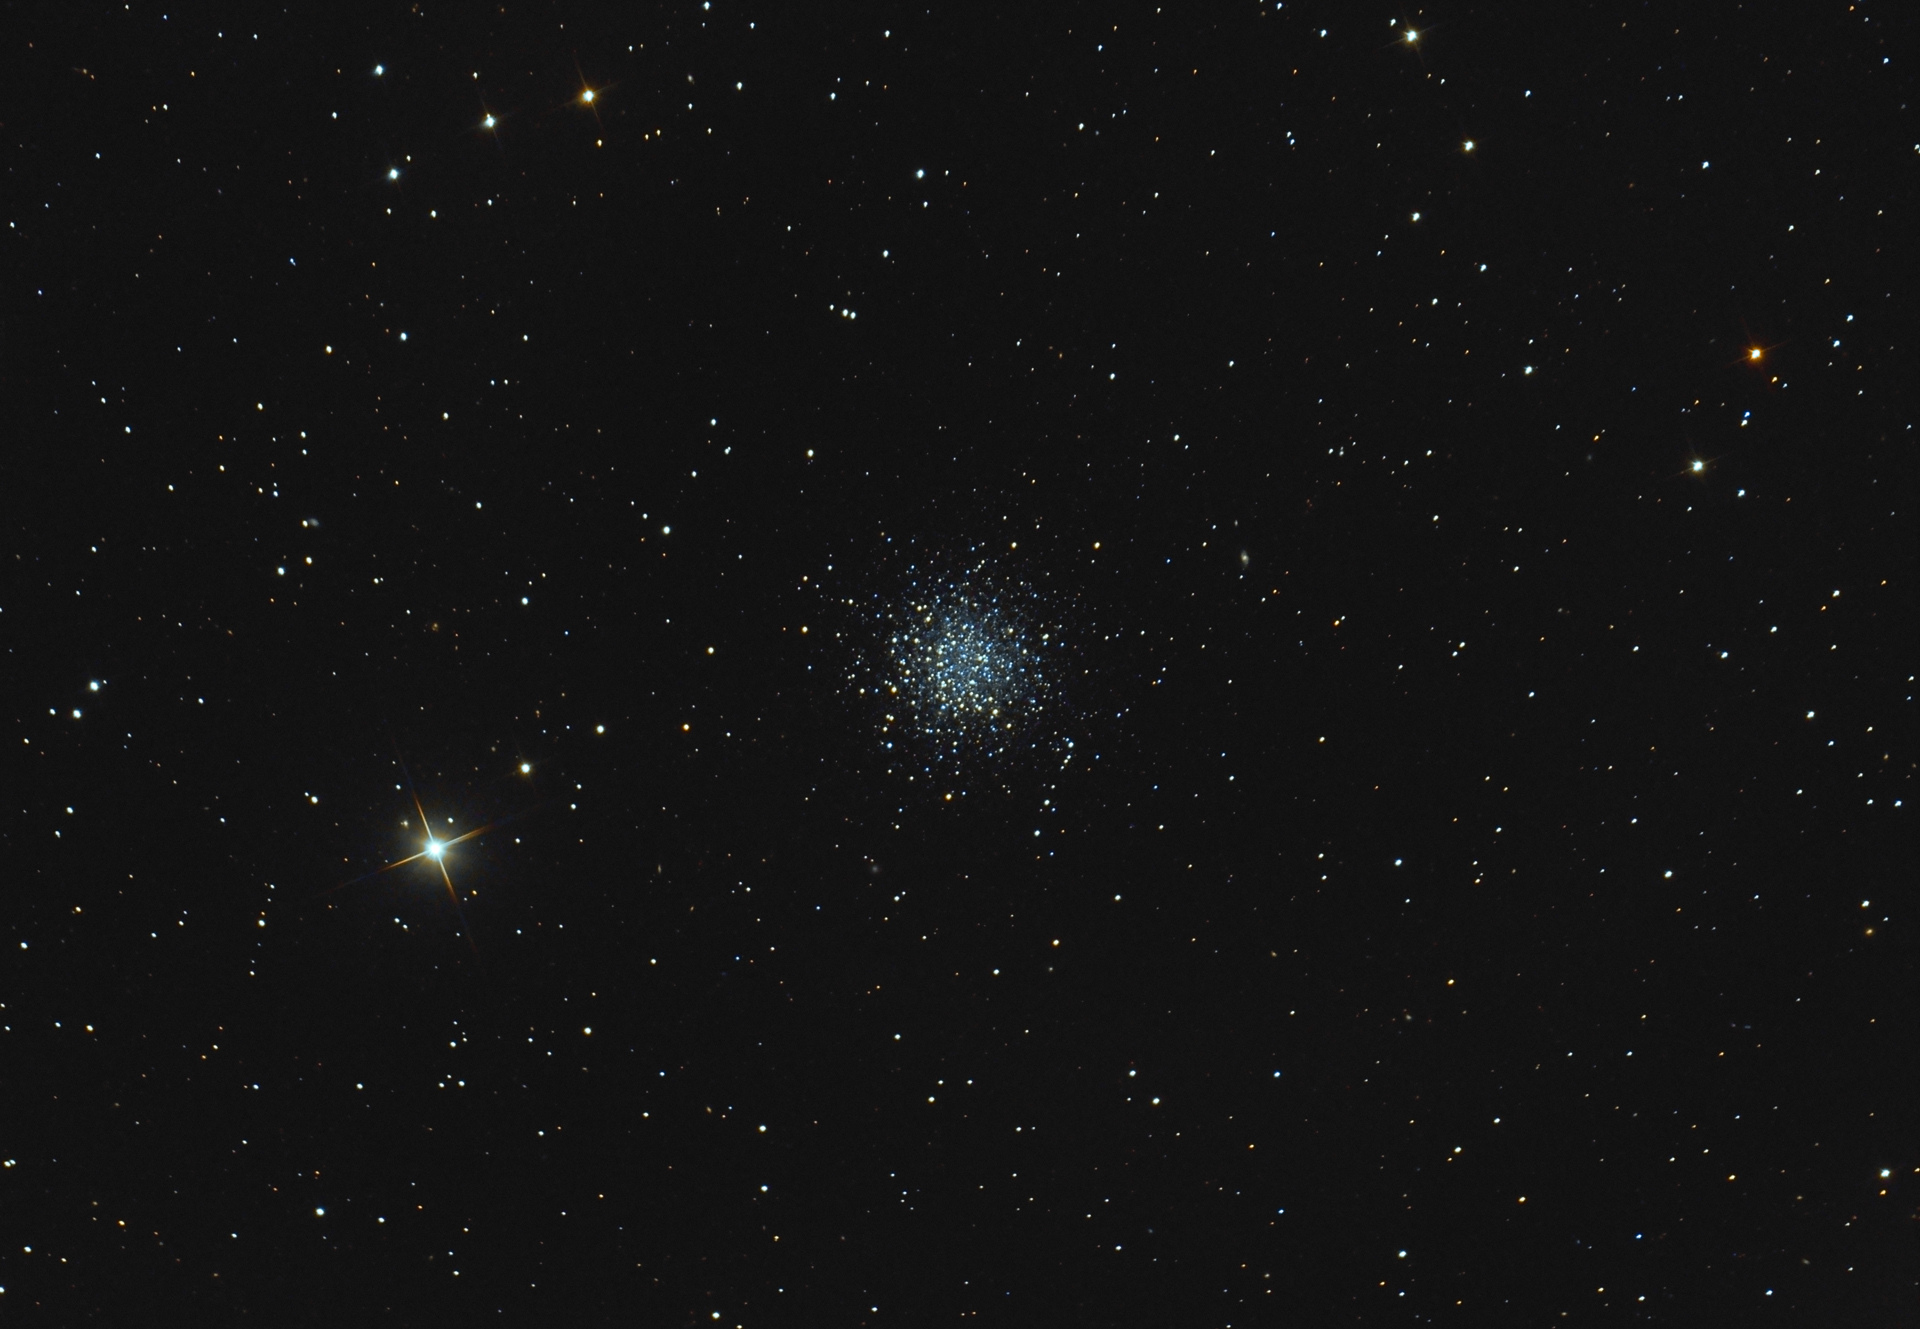 607b0242b4122_NGC546614-04-2021PW.jpg.05eb183aeb3508fbc1e5e1f8ff49ba6d.jpg